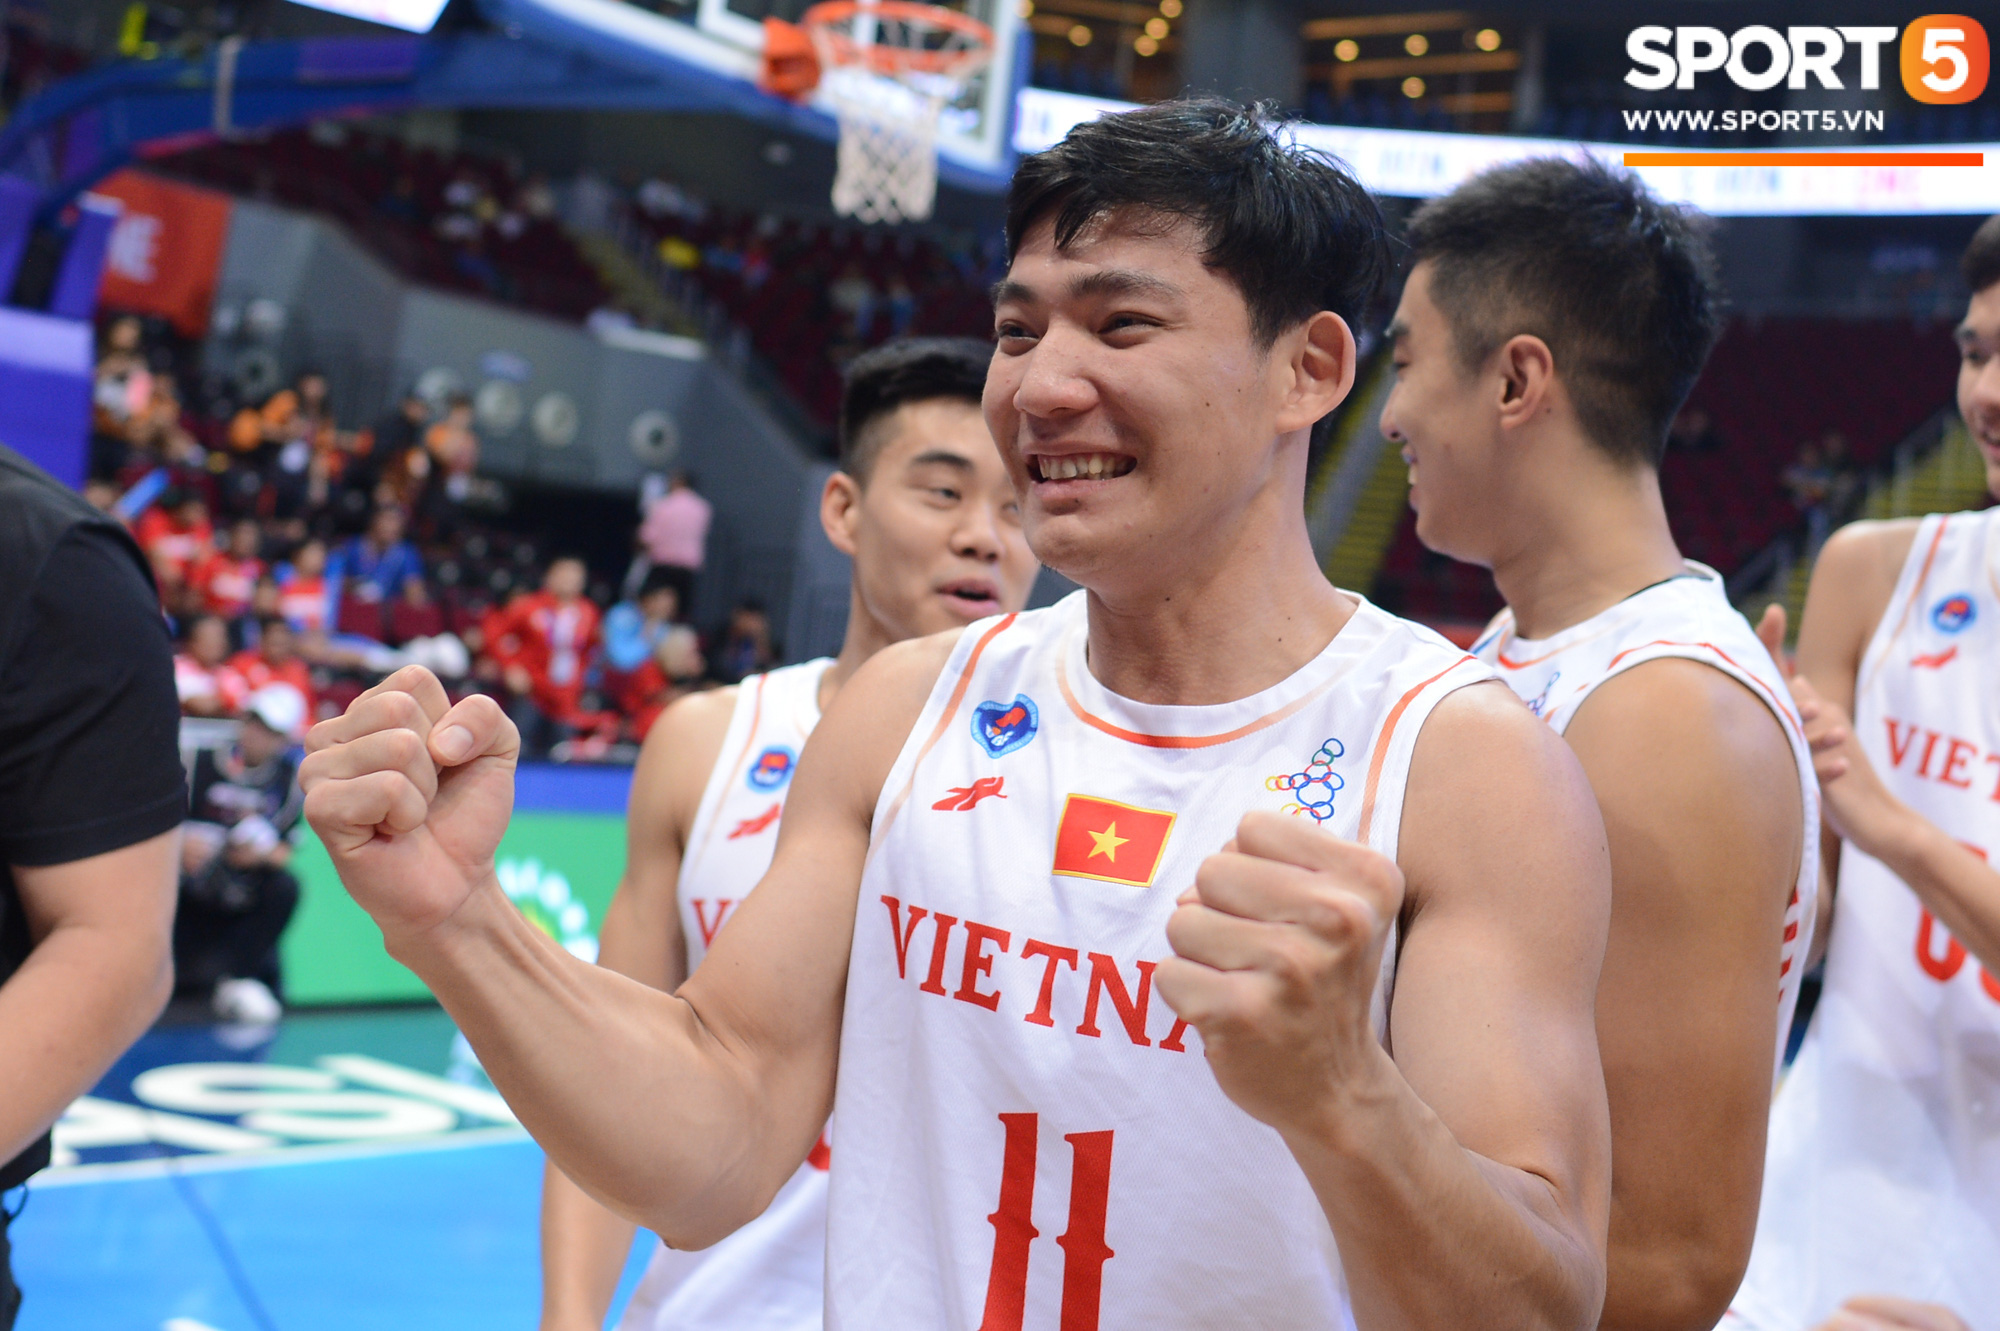 Chùm ảnh: Bật tung cảm xúc khi bóng rổ Việt Nam lần đầu giành tấm huy chương đồng tại SEA Games - Ảnh 8.